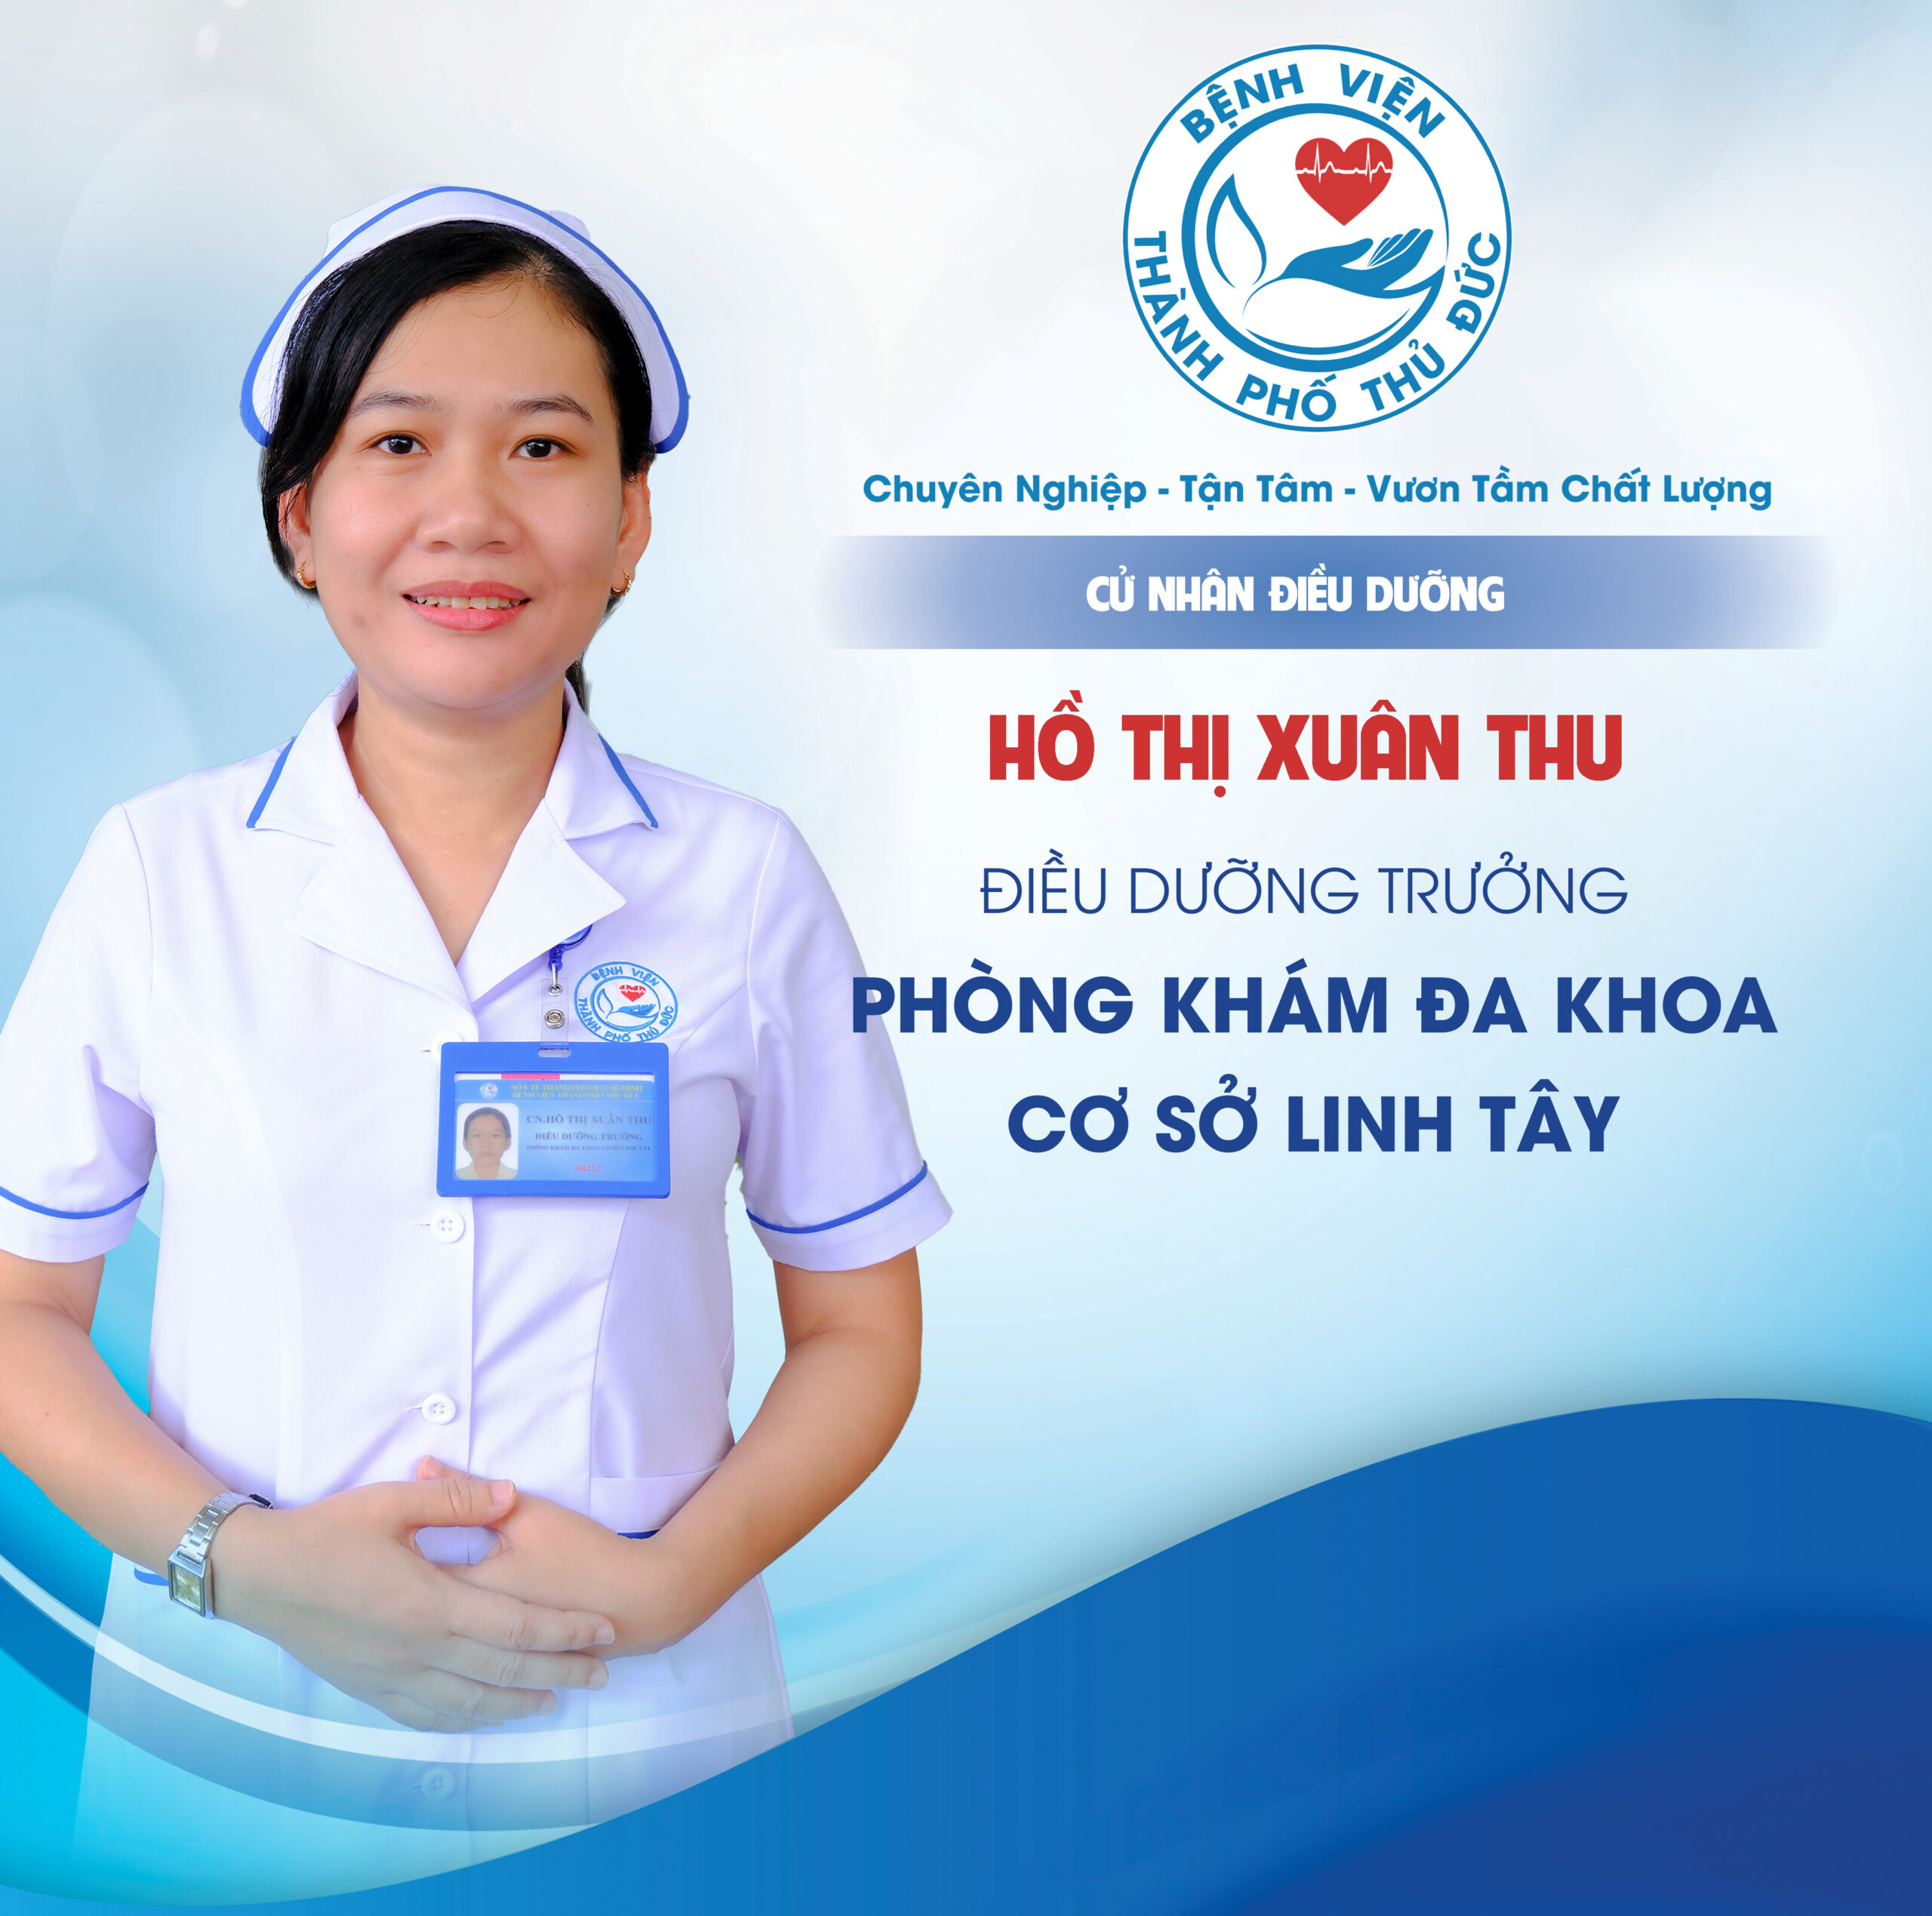 CNĐD. Hồ Thị Xuân Thu - Điều dưỡng Trưởng Phòng khám Đa khoa Cơ sở Linh Tây